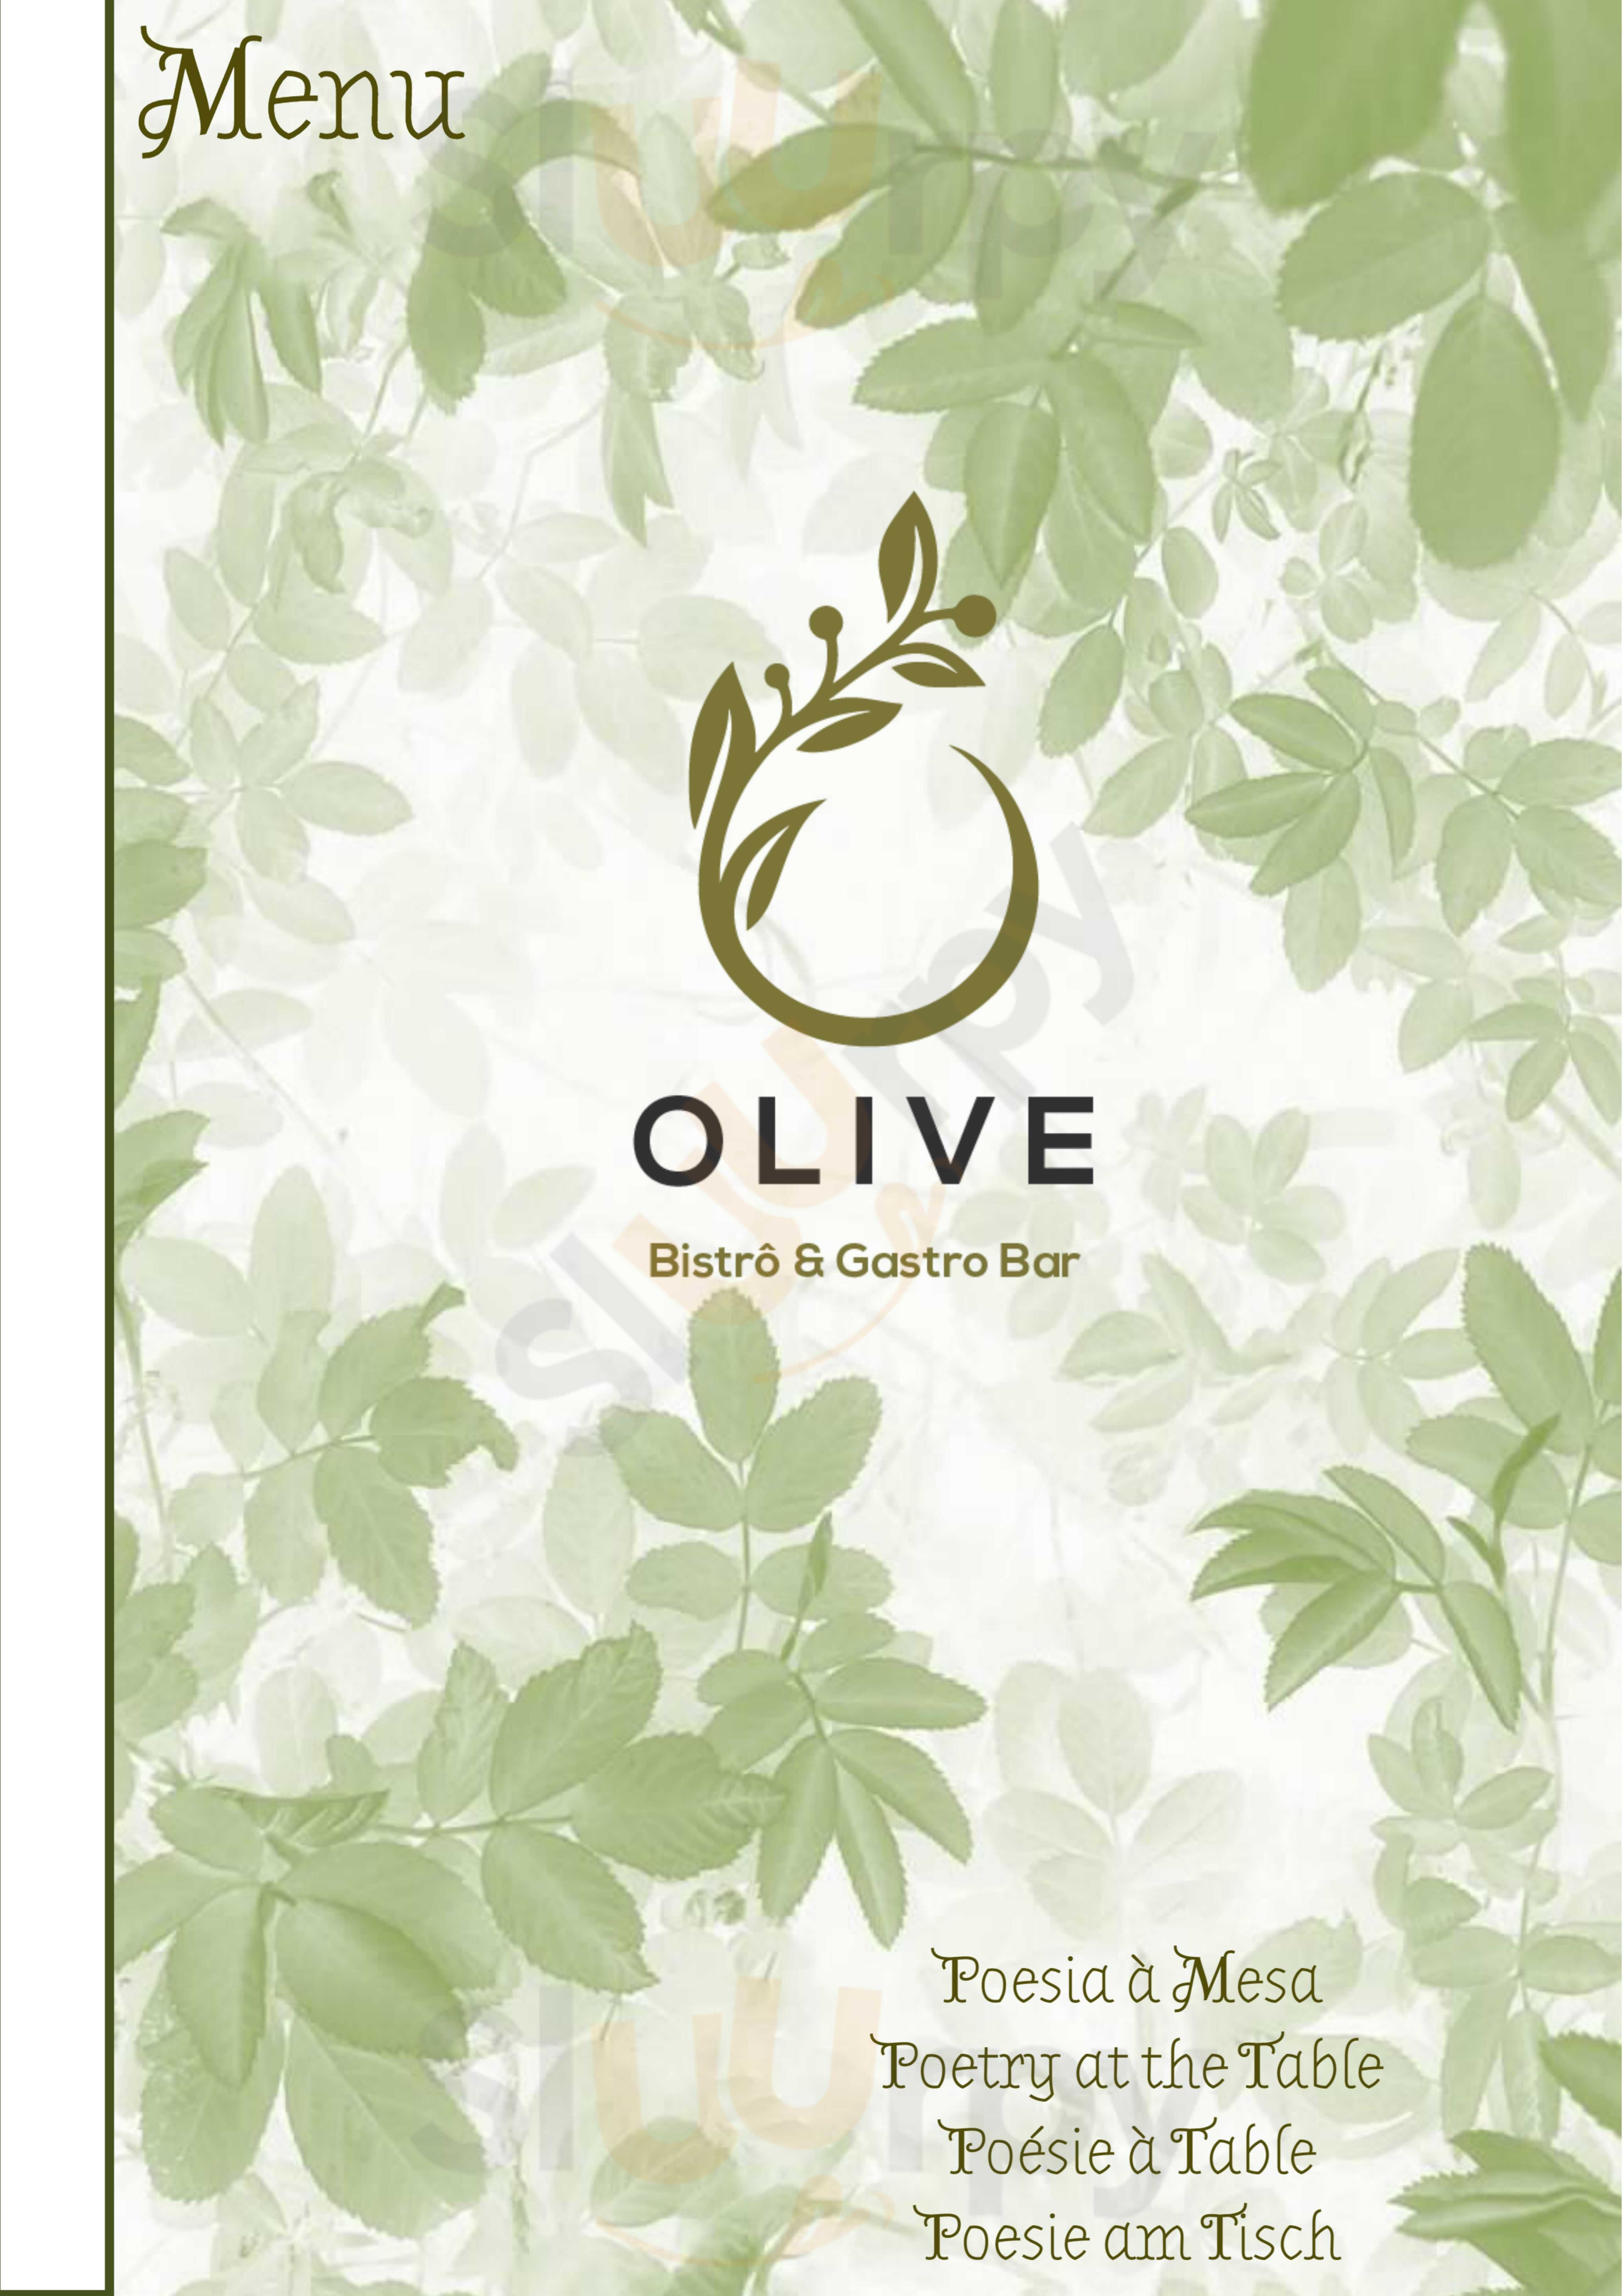 Olive Bistro & Gastro Bar Sesmarias Menu - 1